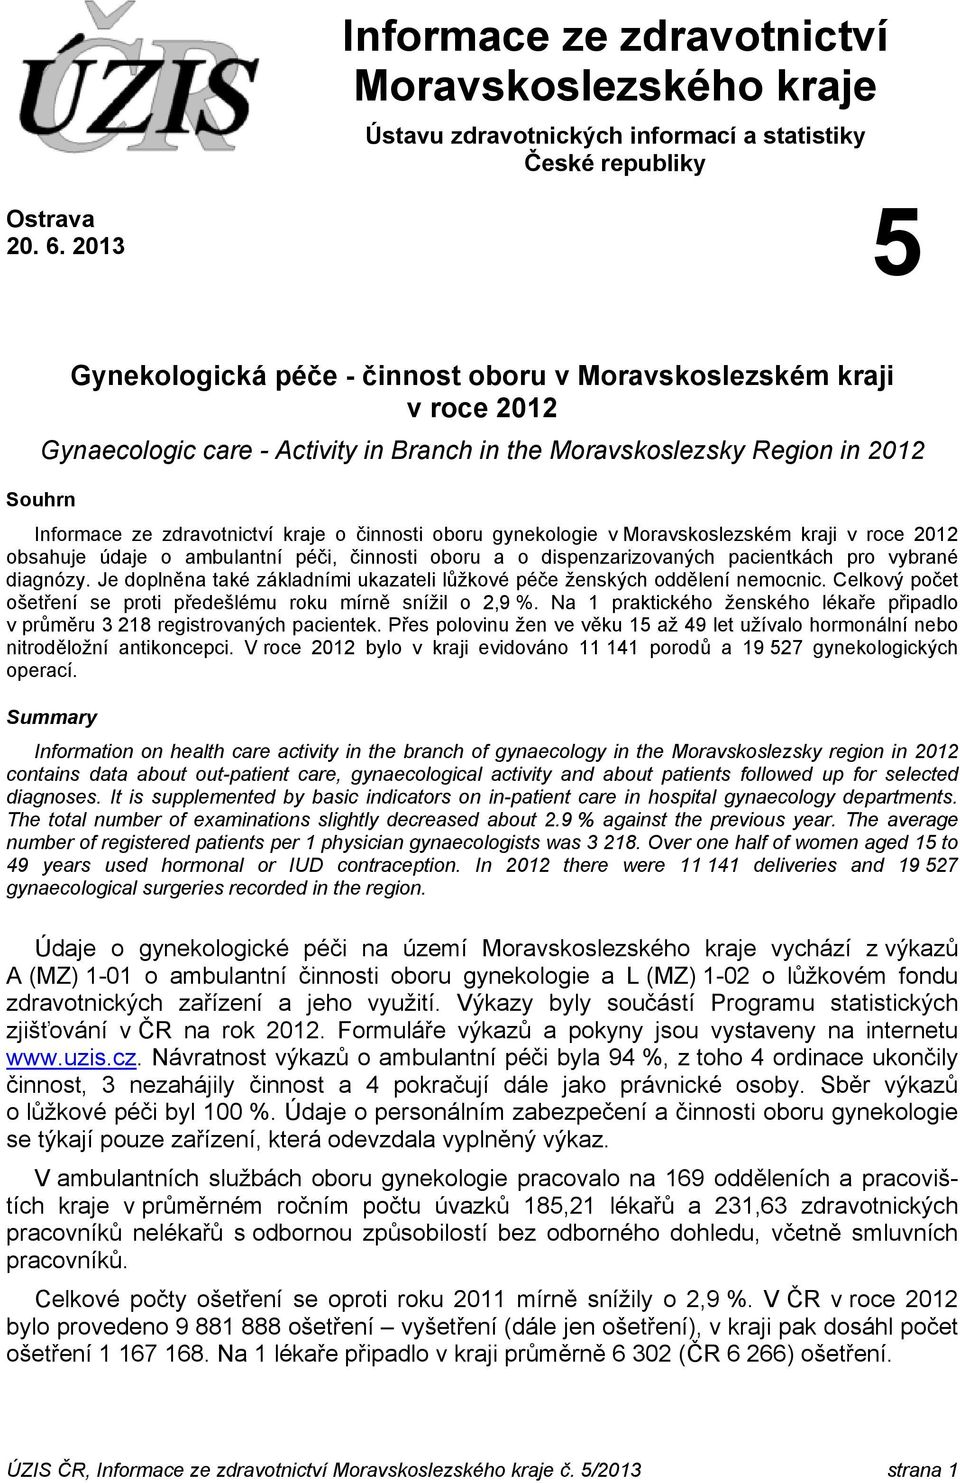 činnosti oboru gynekologie v Moravskoslezském kraji v roce 2012 obsahuje údaje o ambulantní péči, činnosti oboru a o dispenzarizovaných pacientkách pro vybrané diagnózy.